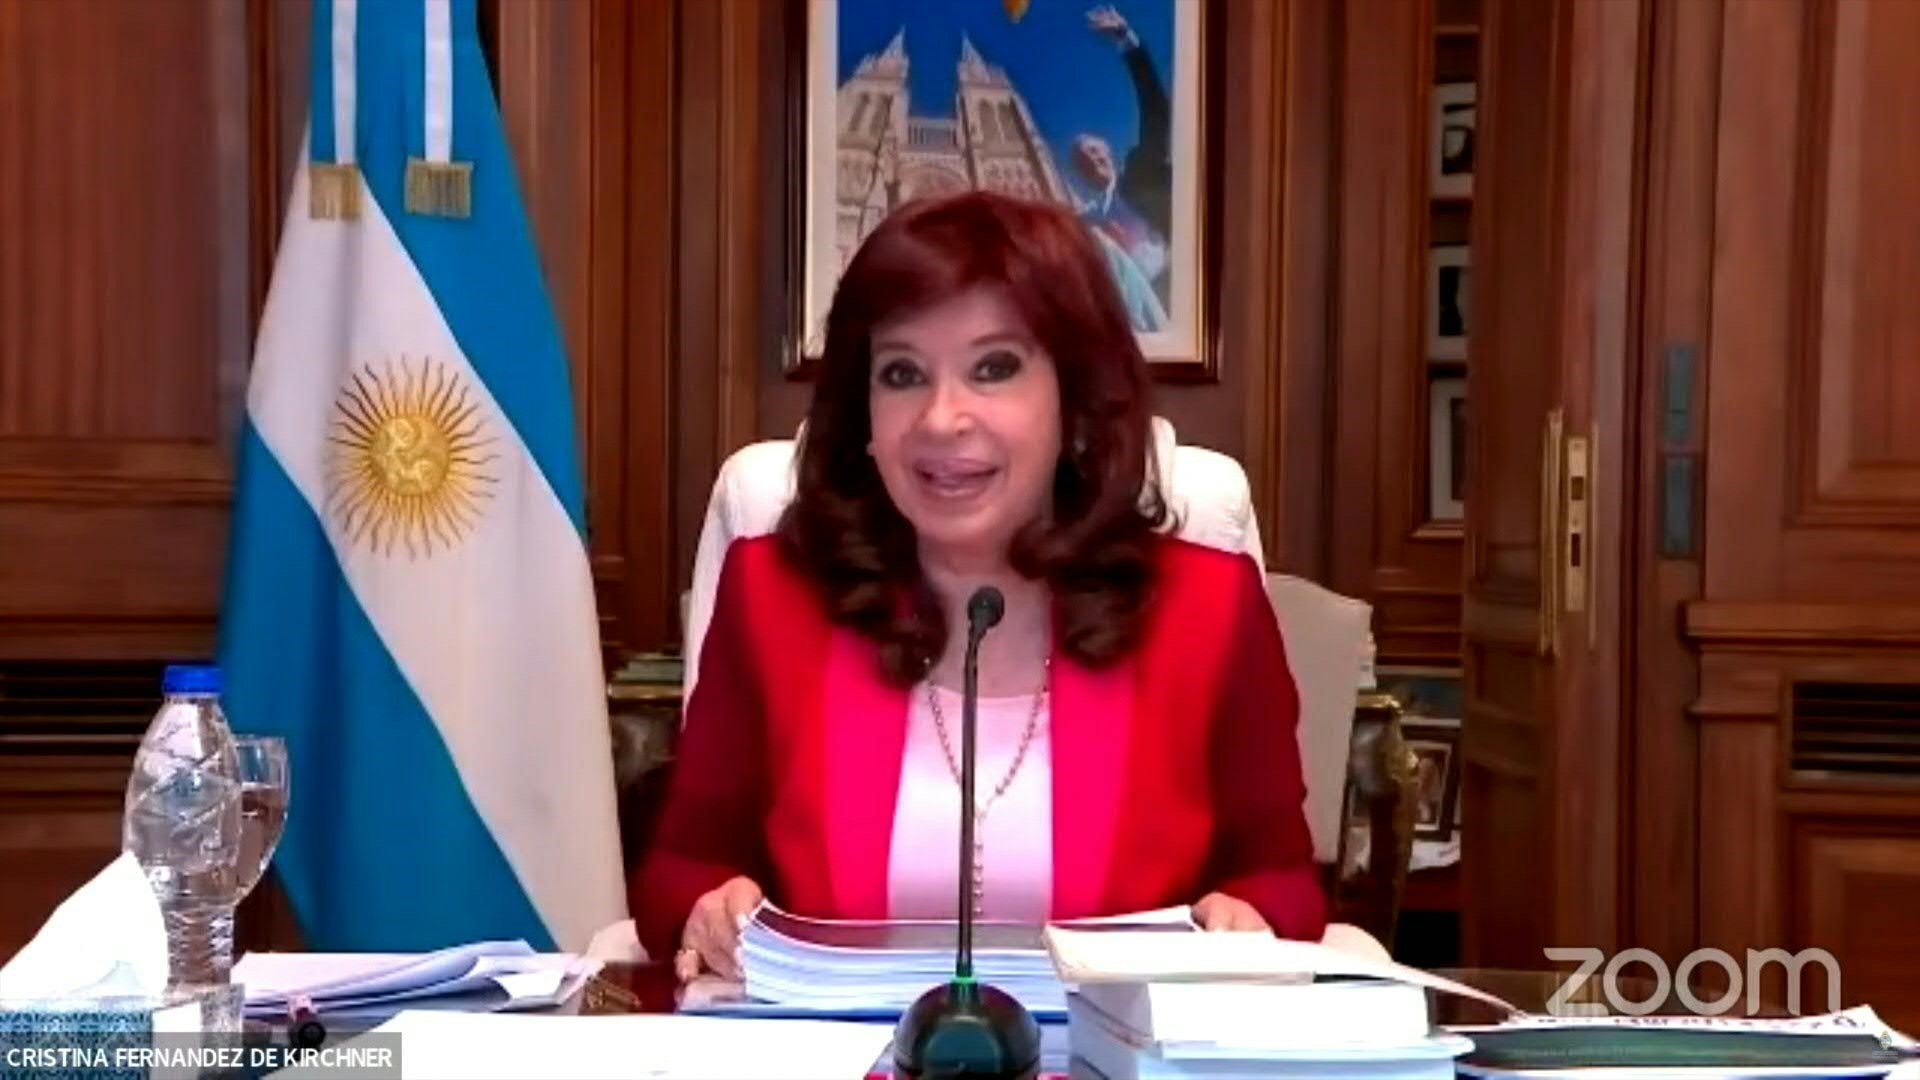 La vicepresidenta de Argentina, Cristina Kirchner, asumió el viernes su propia defensa en los alegatos finales de un juicio por corrupción que denunció como plagado de "mentiras, calumnias y difamaciones", en el cual la Fiscalía ha pedido doce años de prisión para ella.